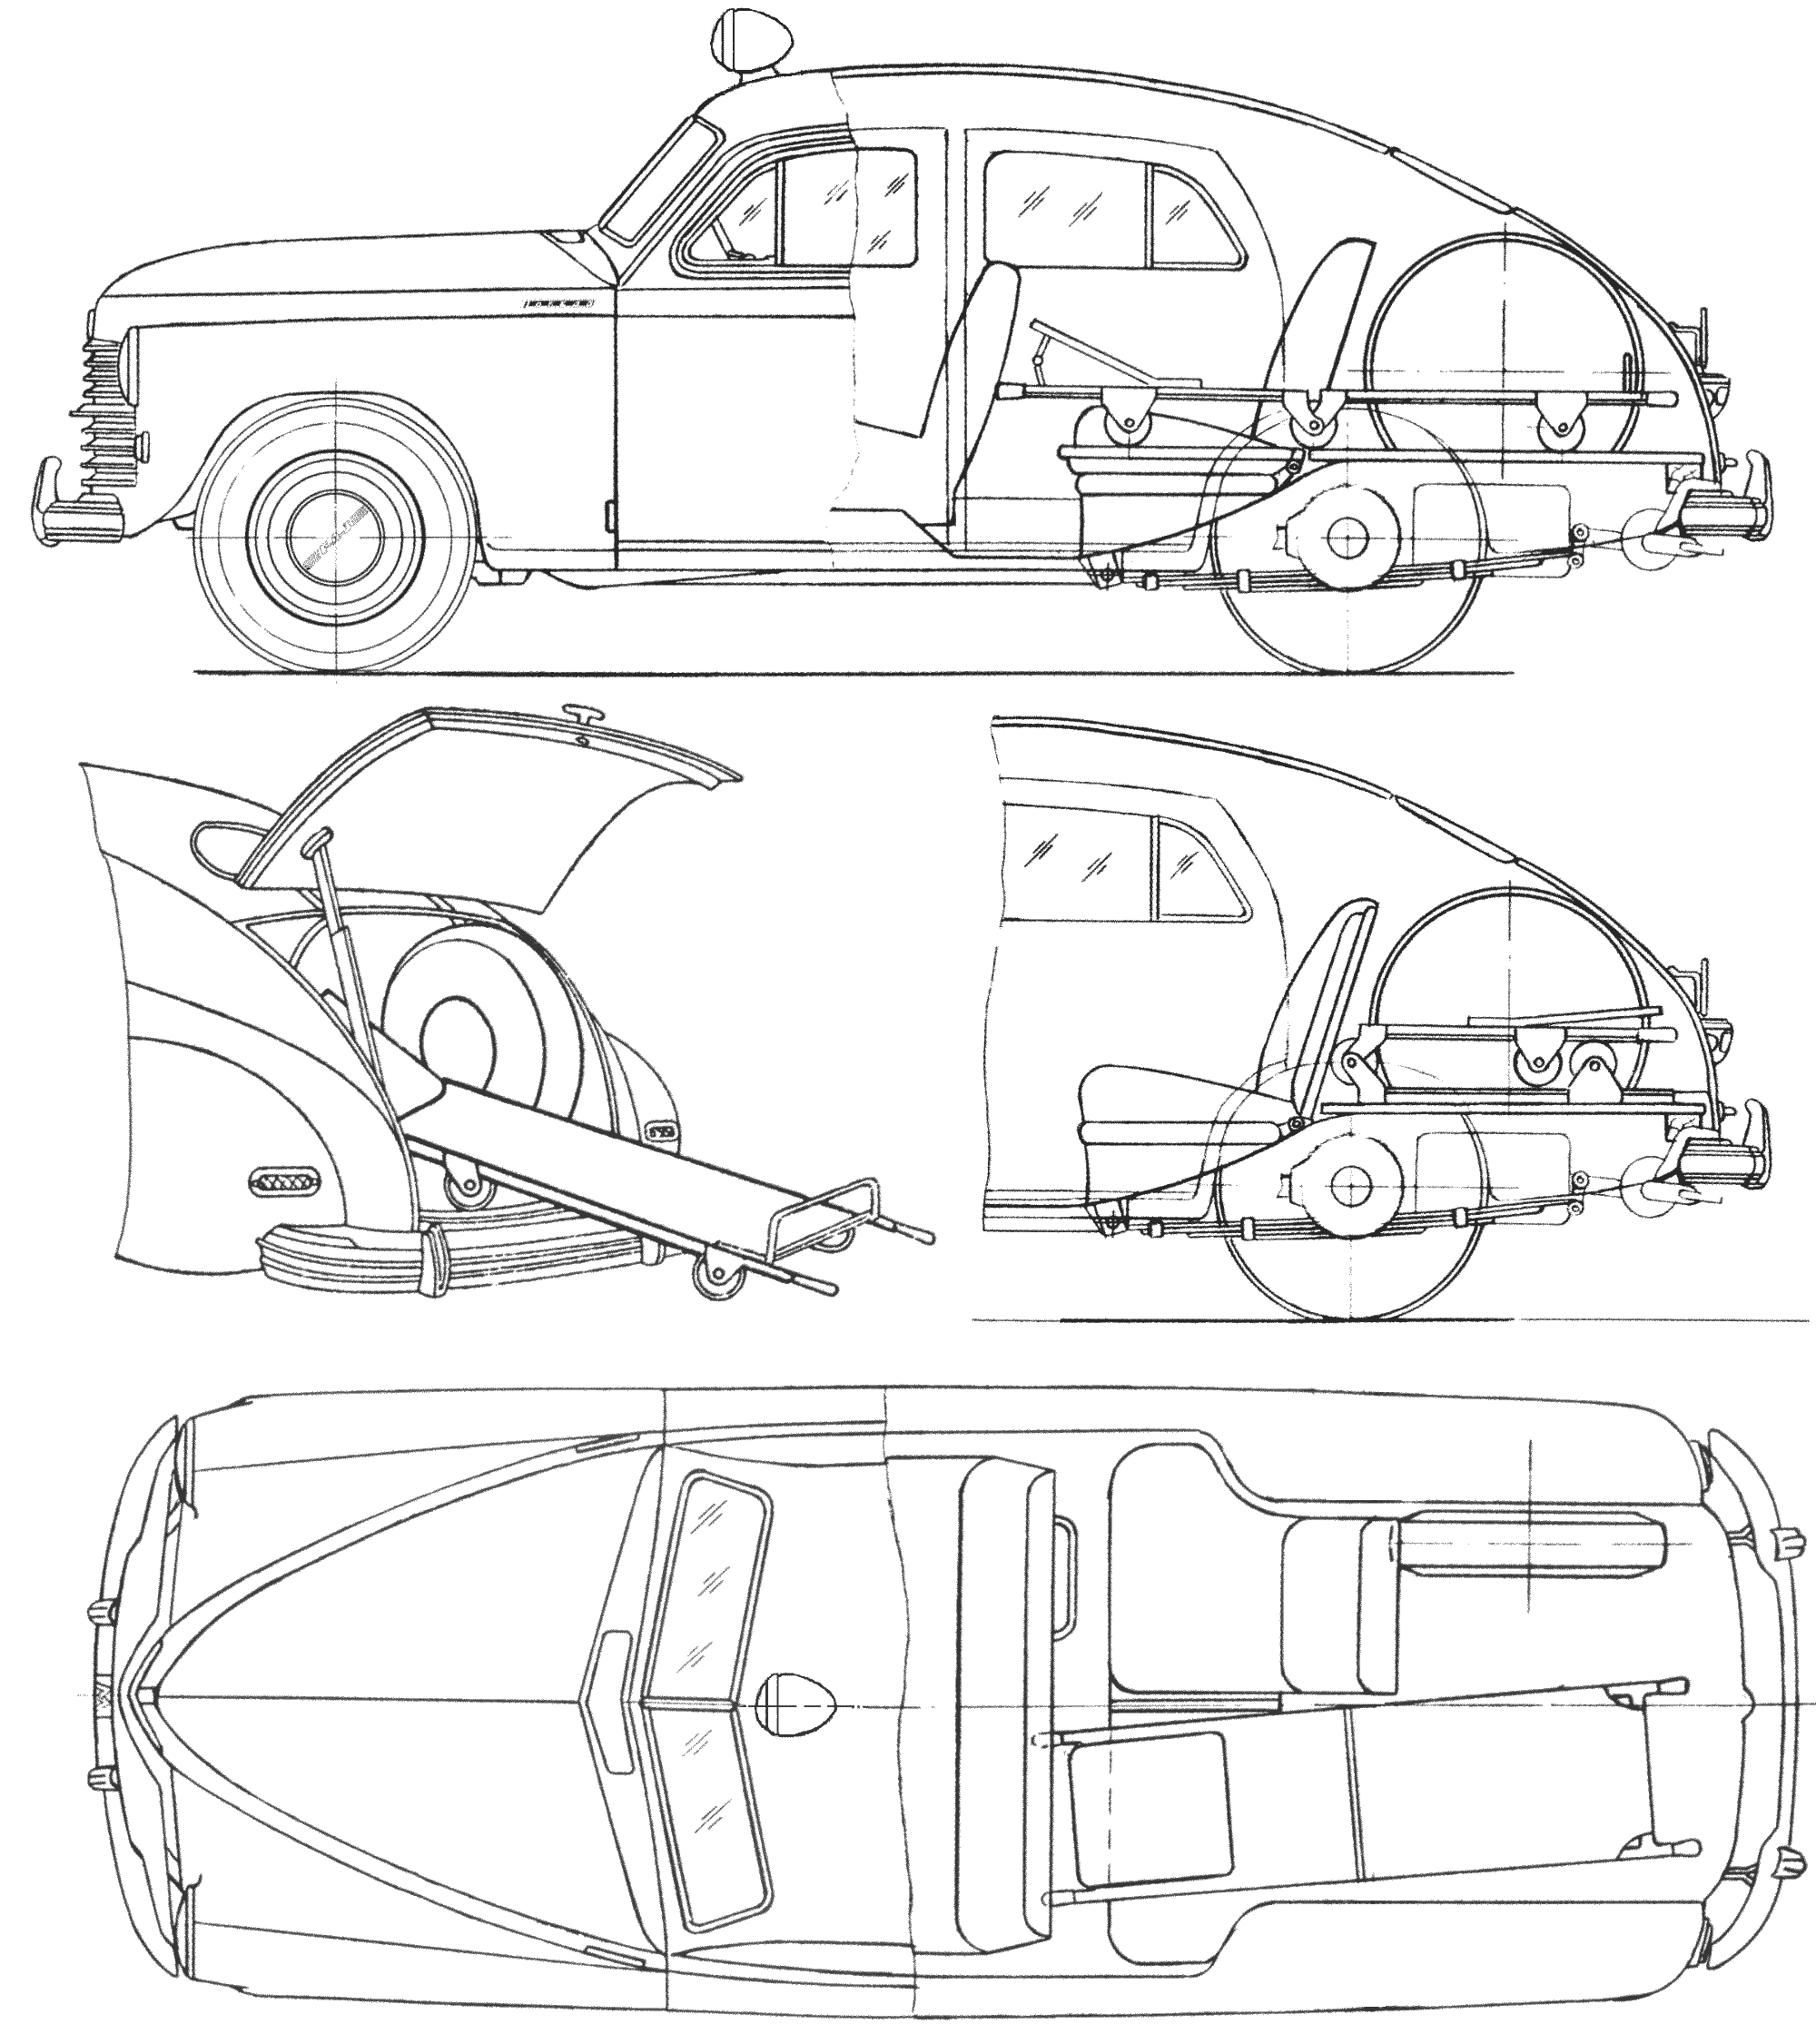 Automobilis GAZ M20 Ambulamce